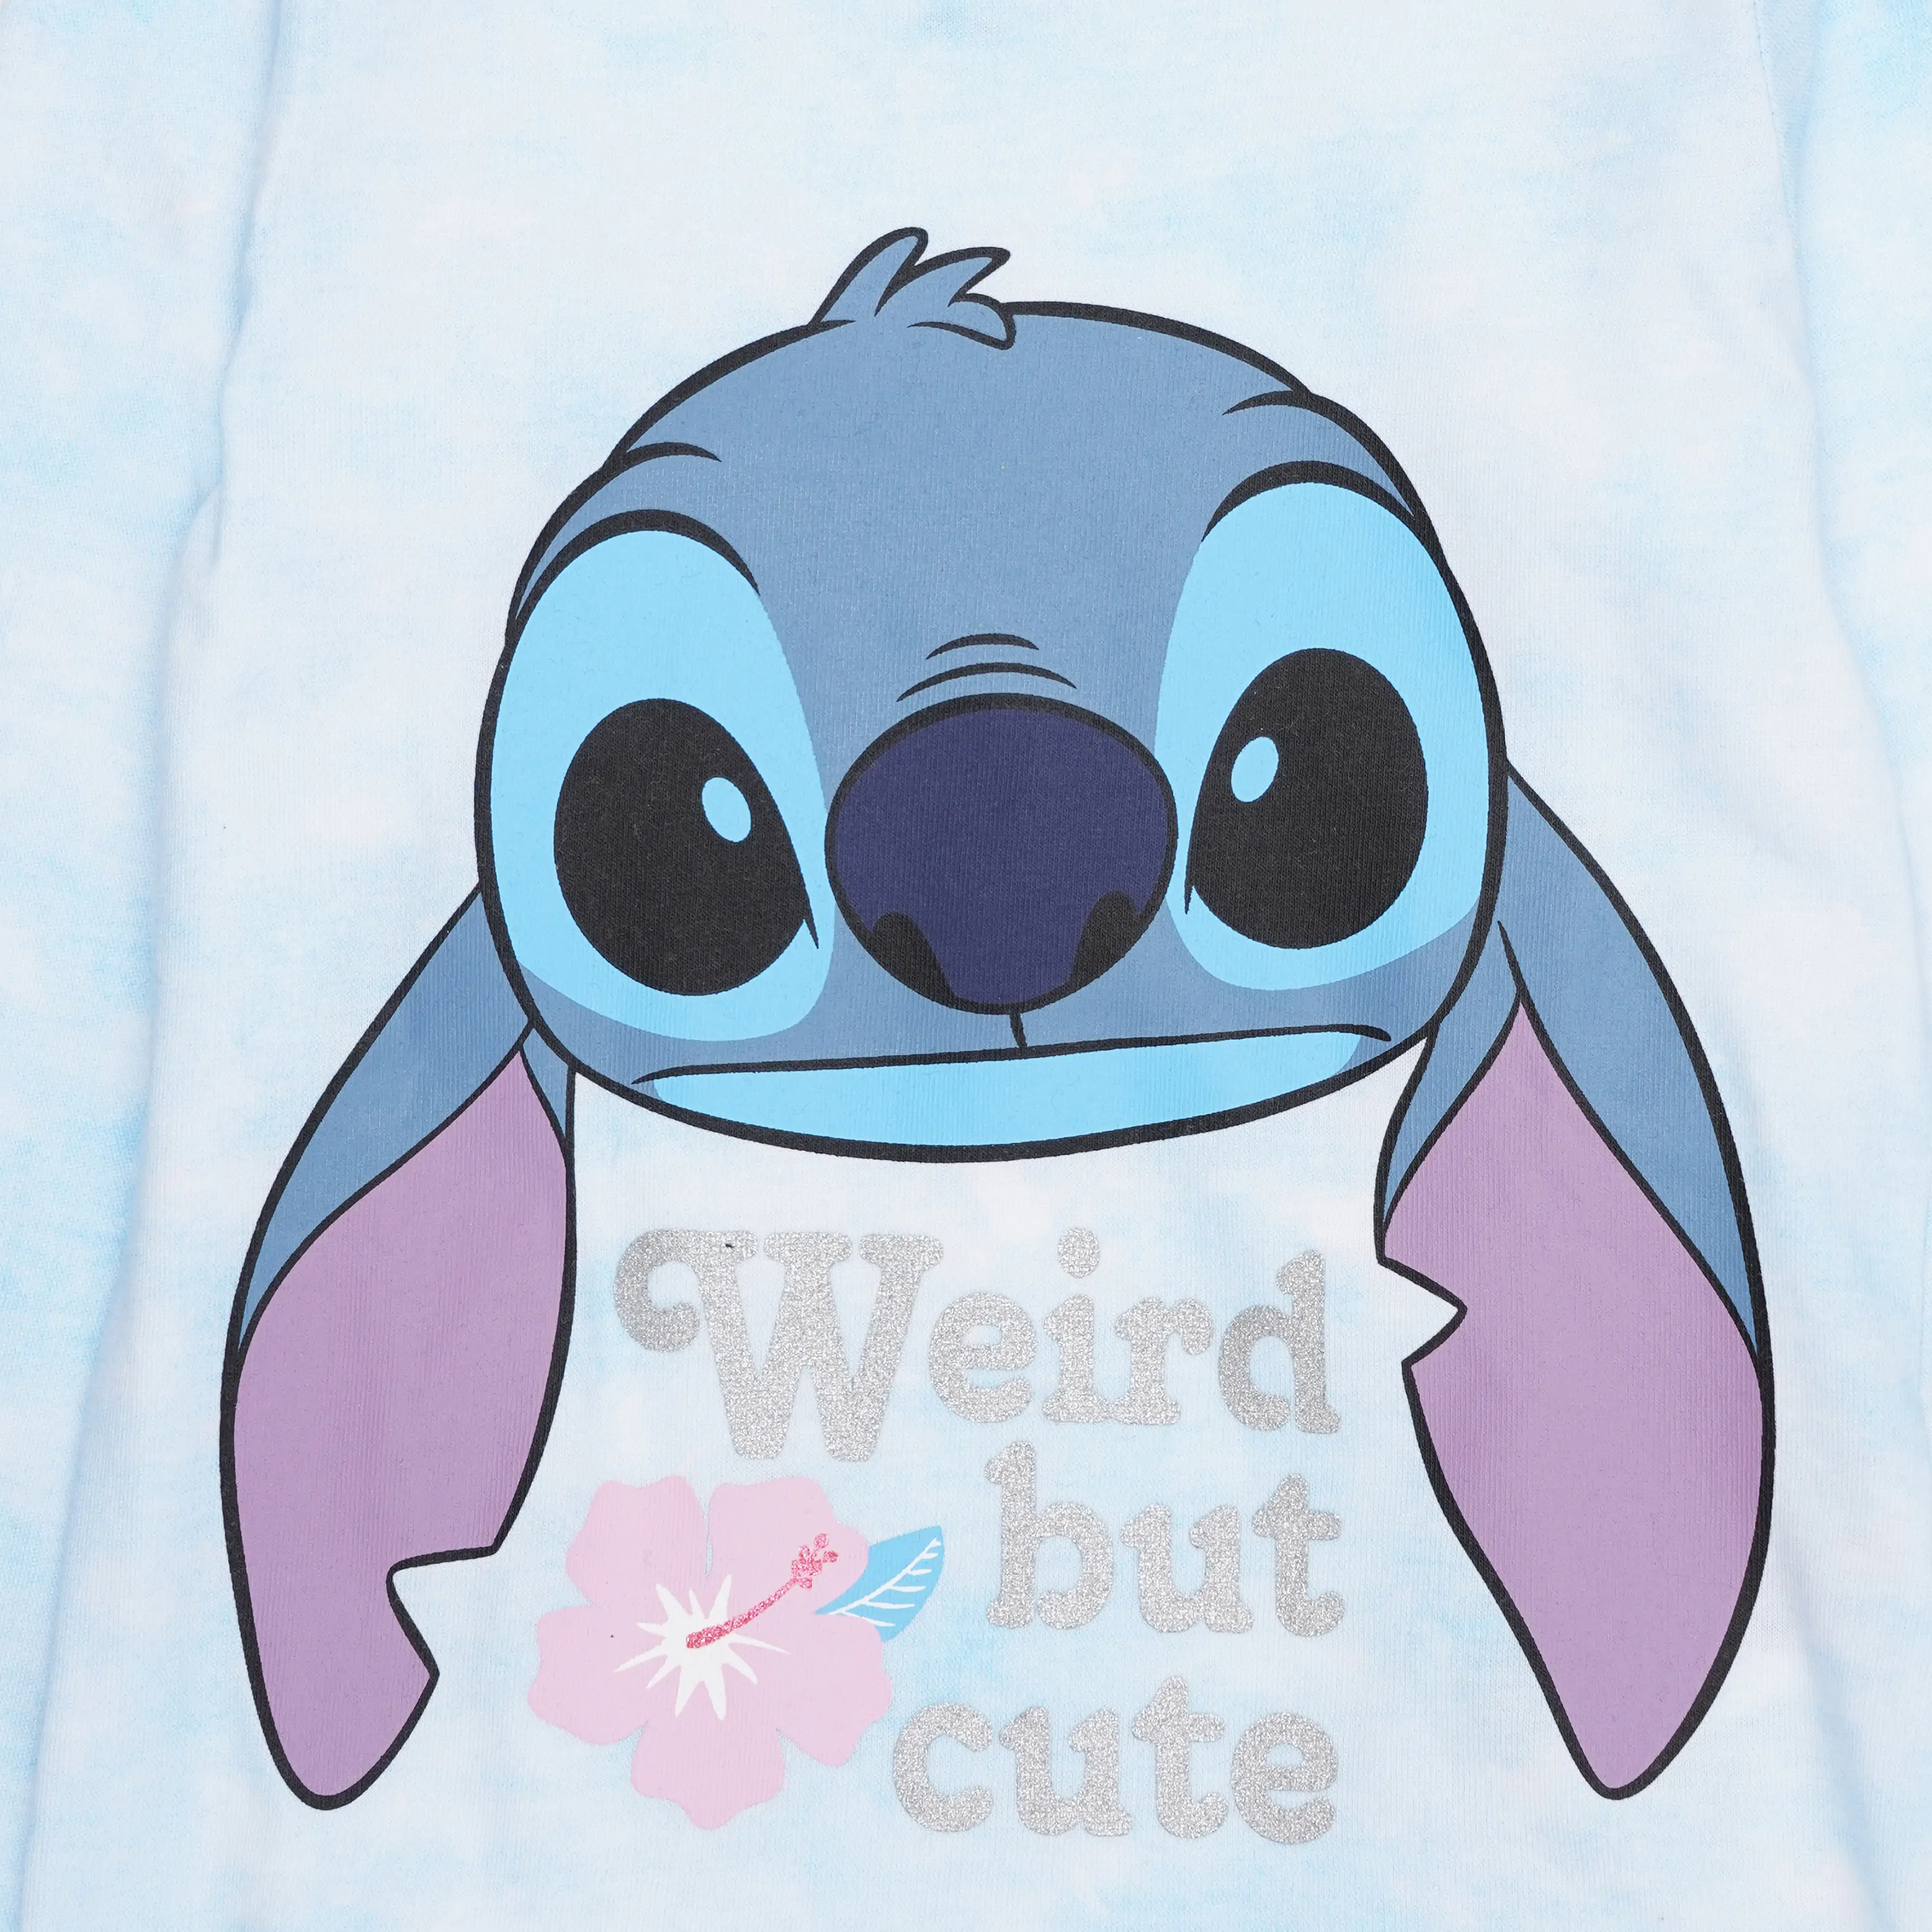 Disney Stitch gyerek pizsama kék termékfotó